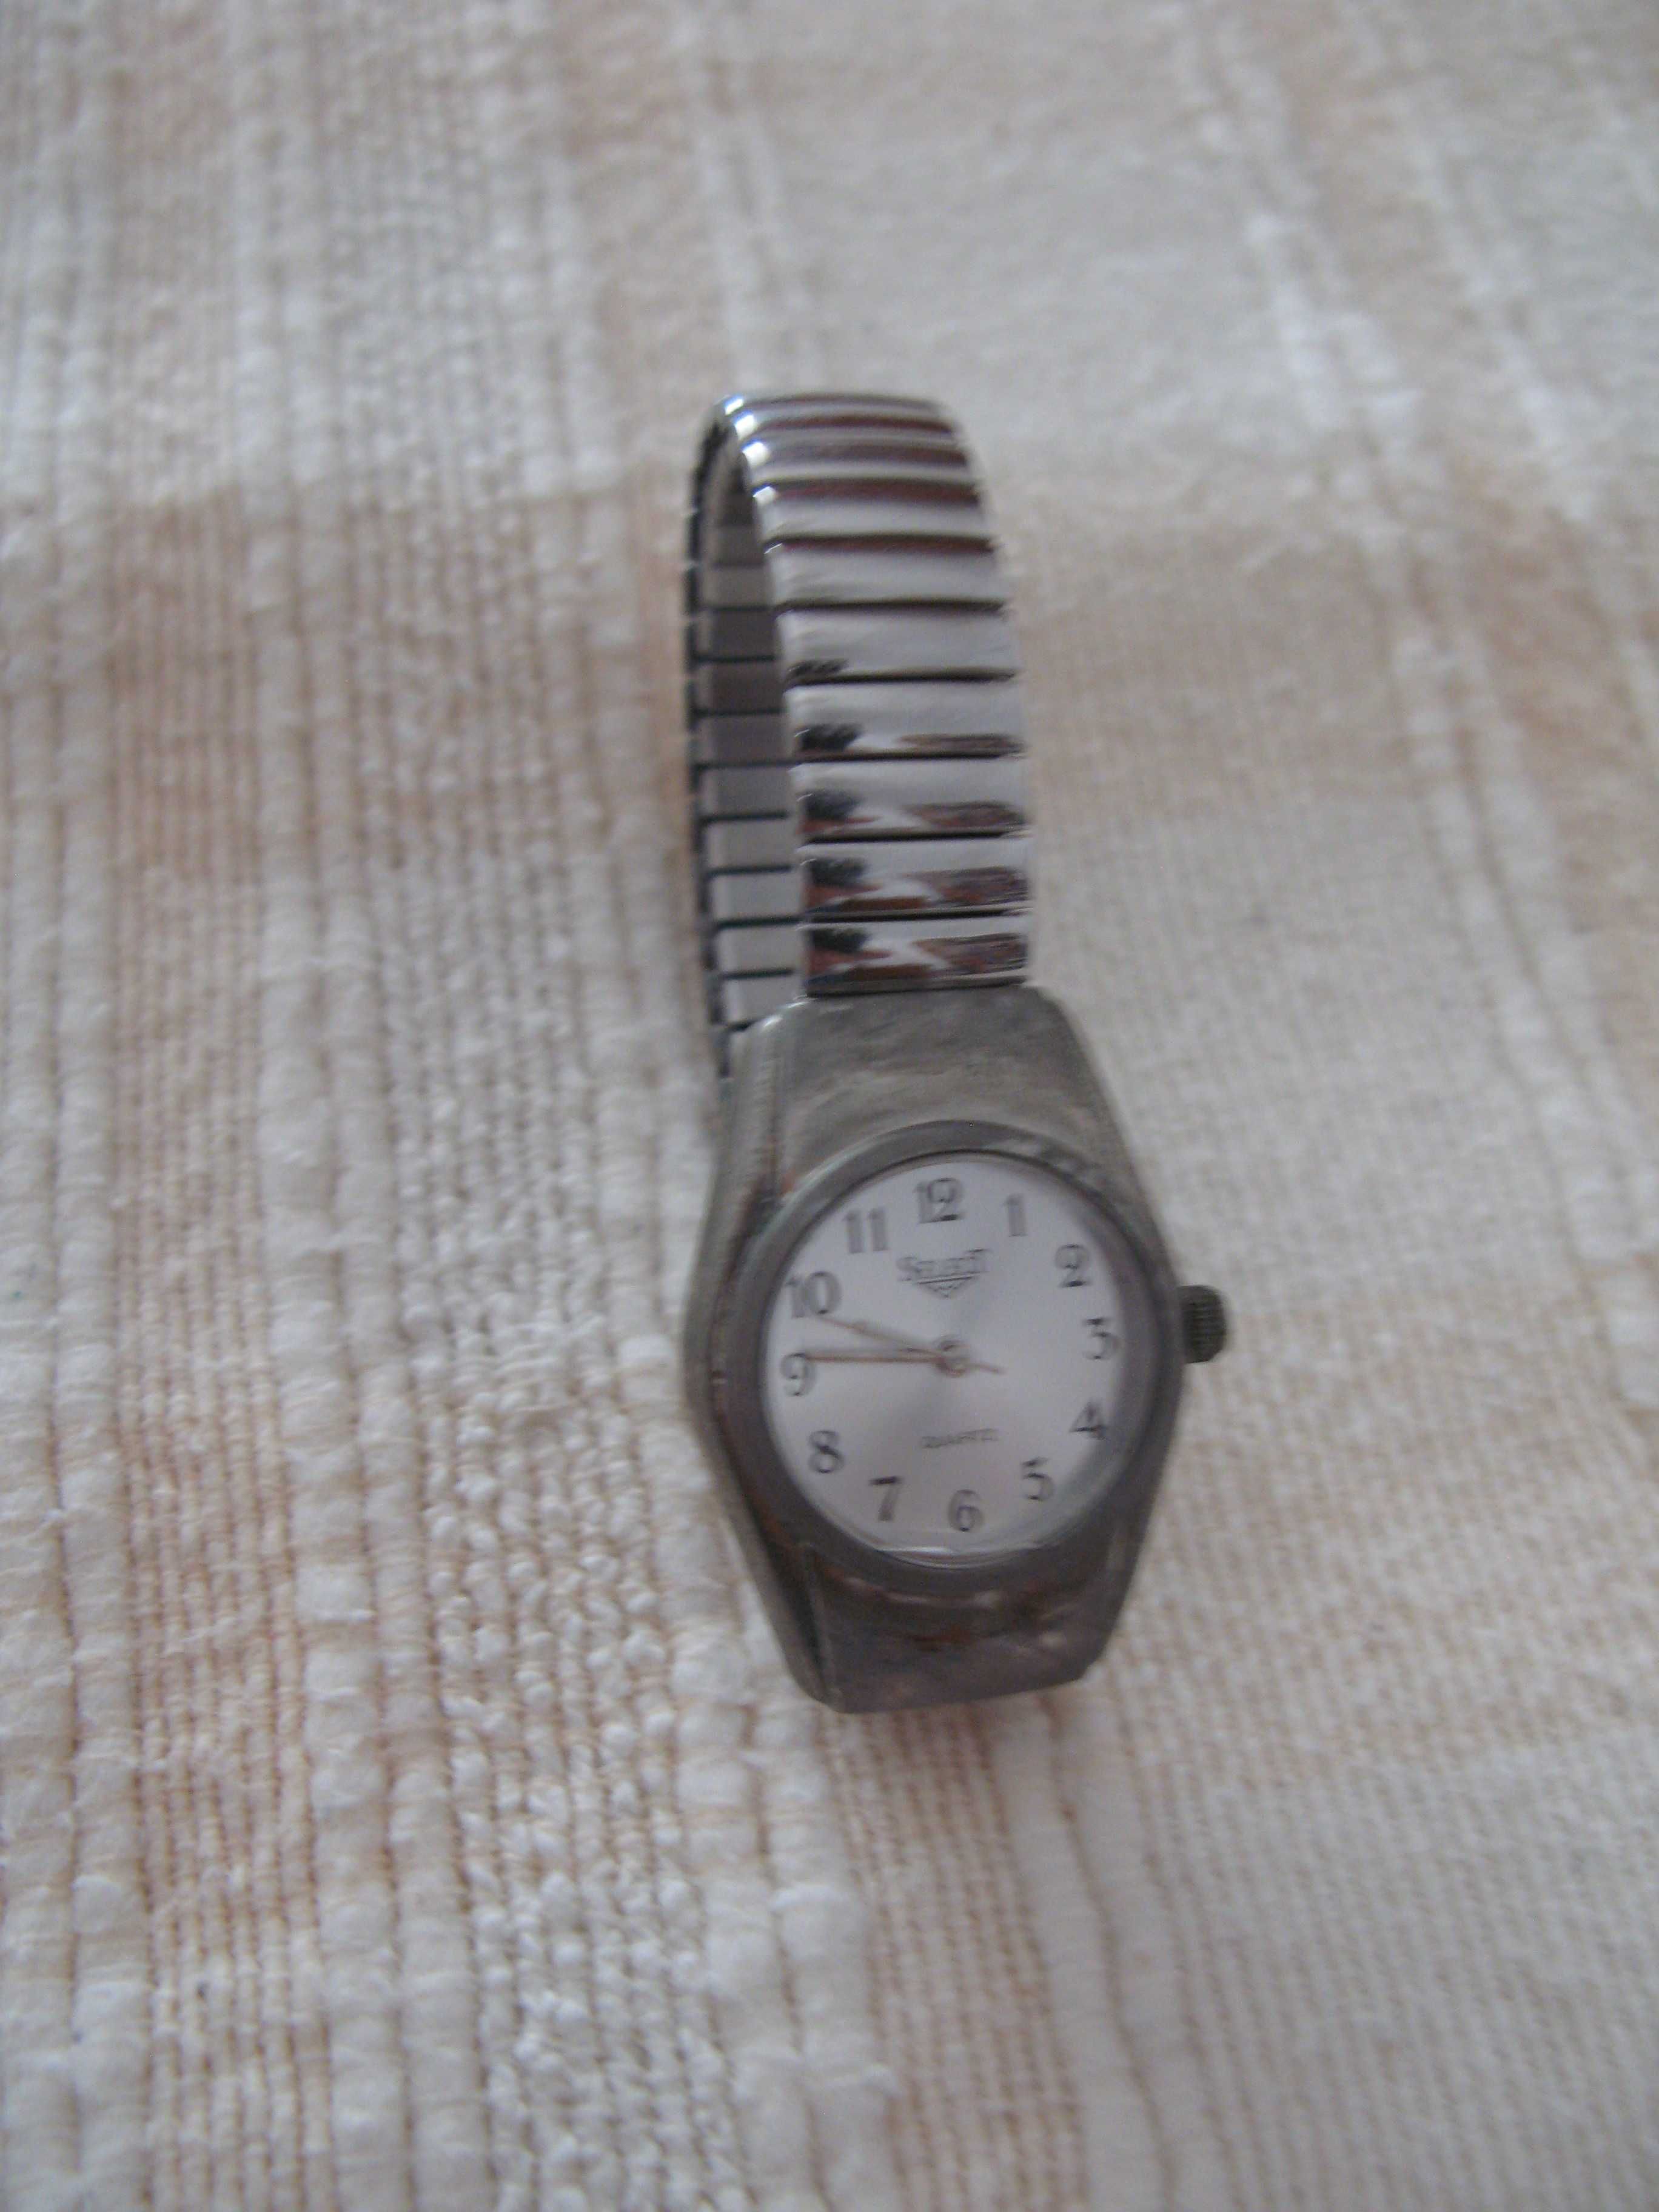 Relógio de senhora da marca SELECT (original).